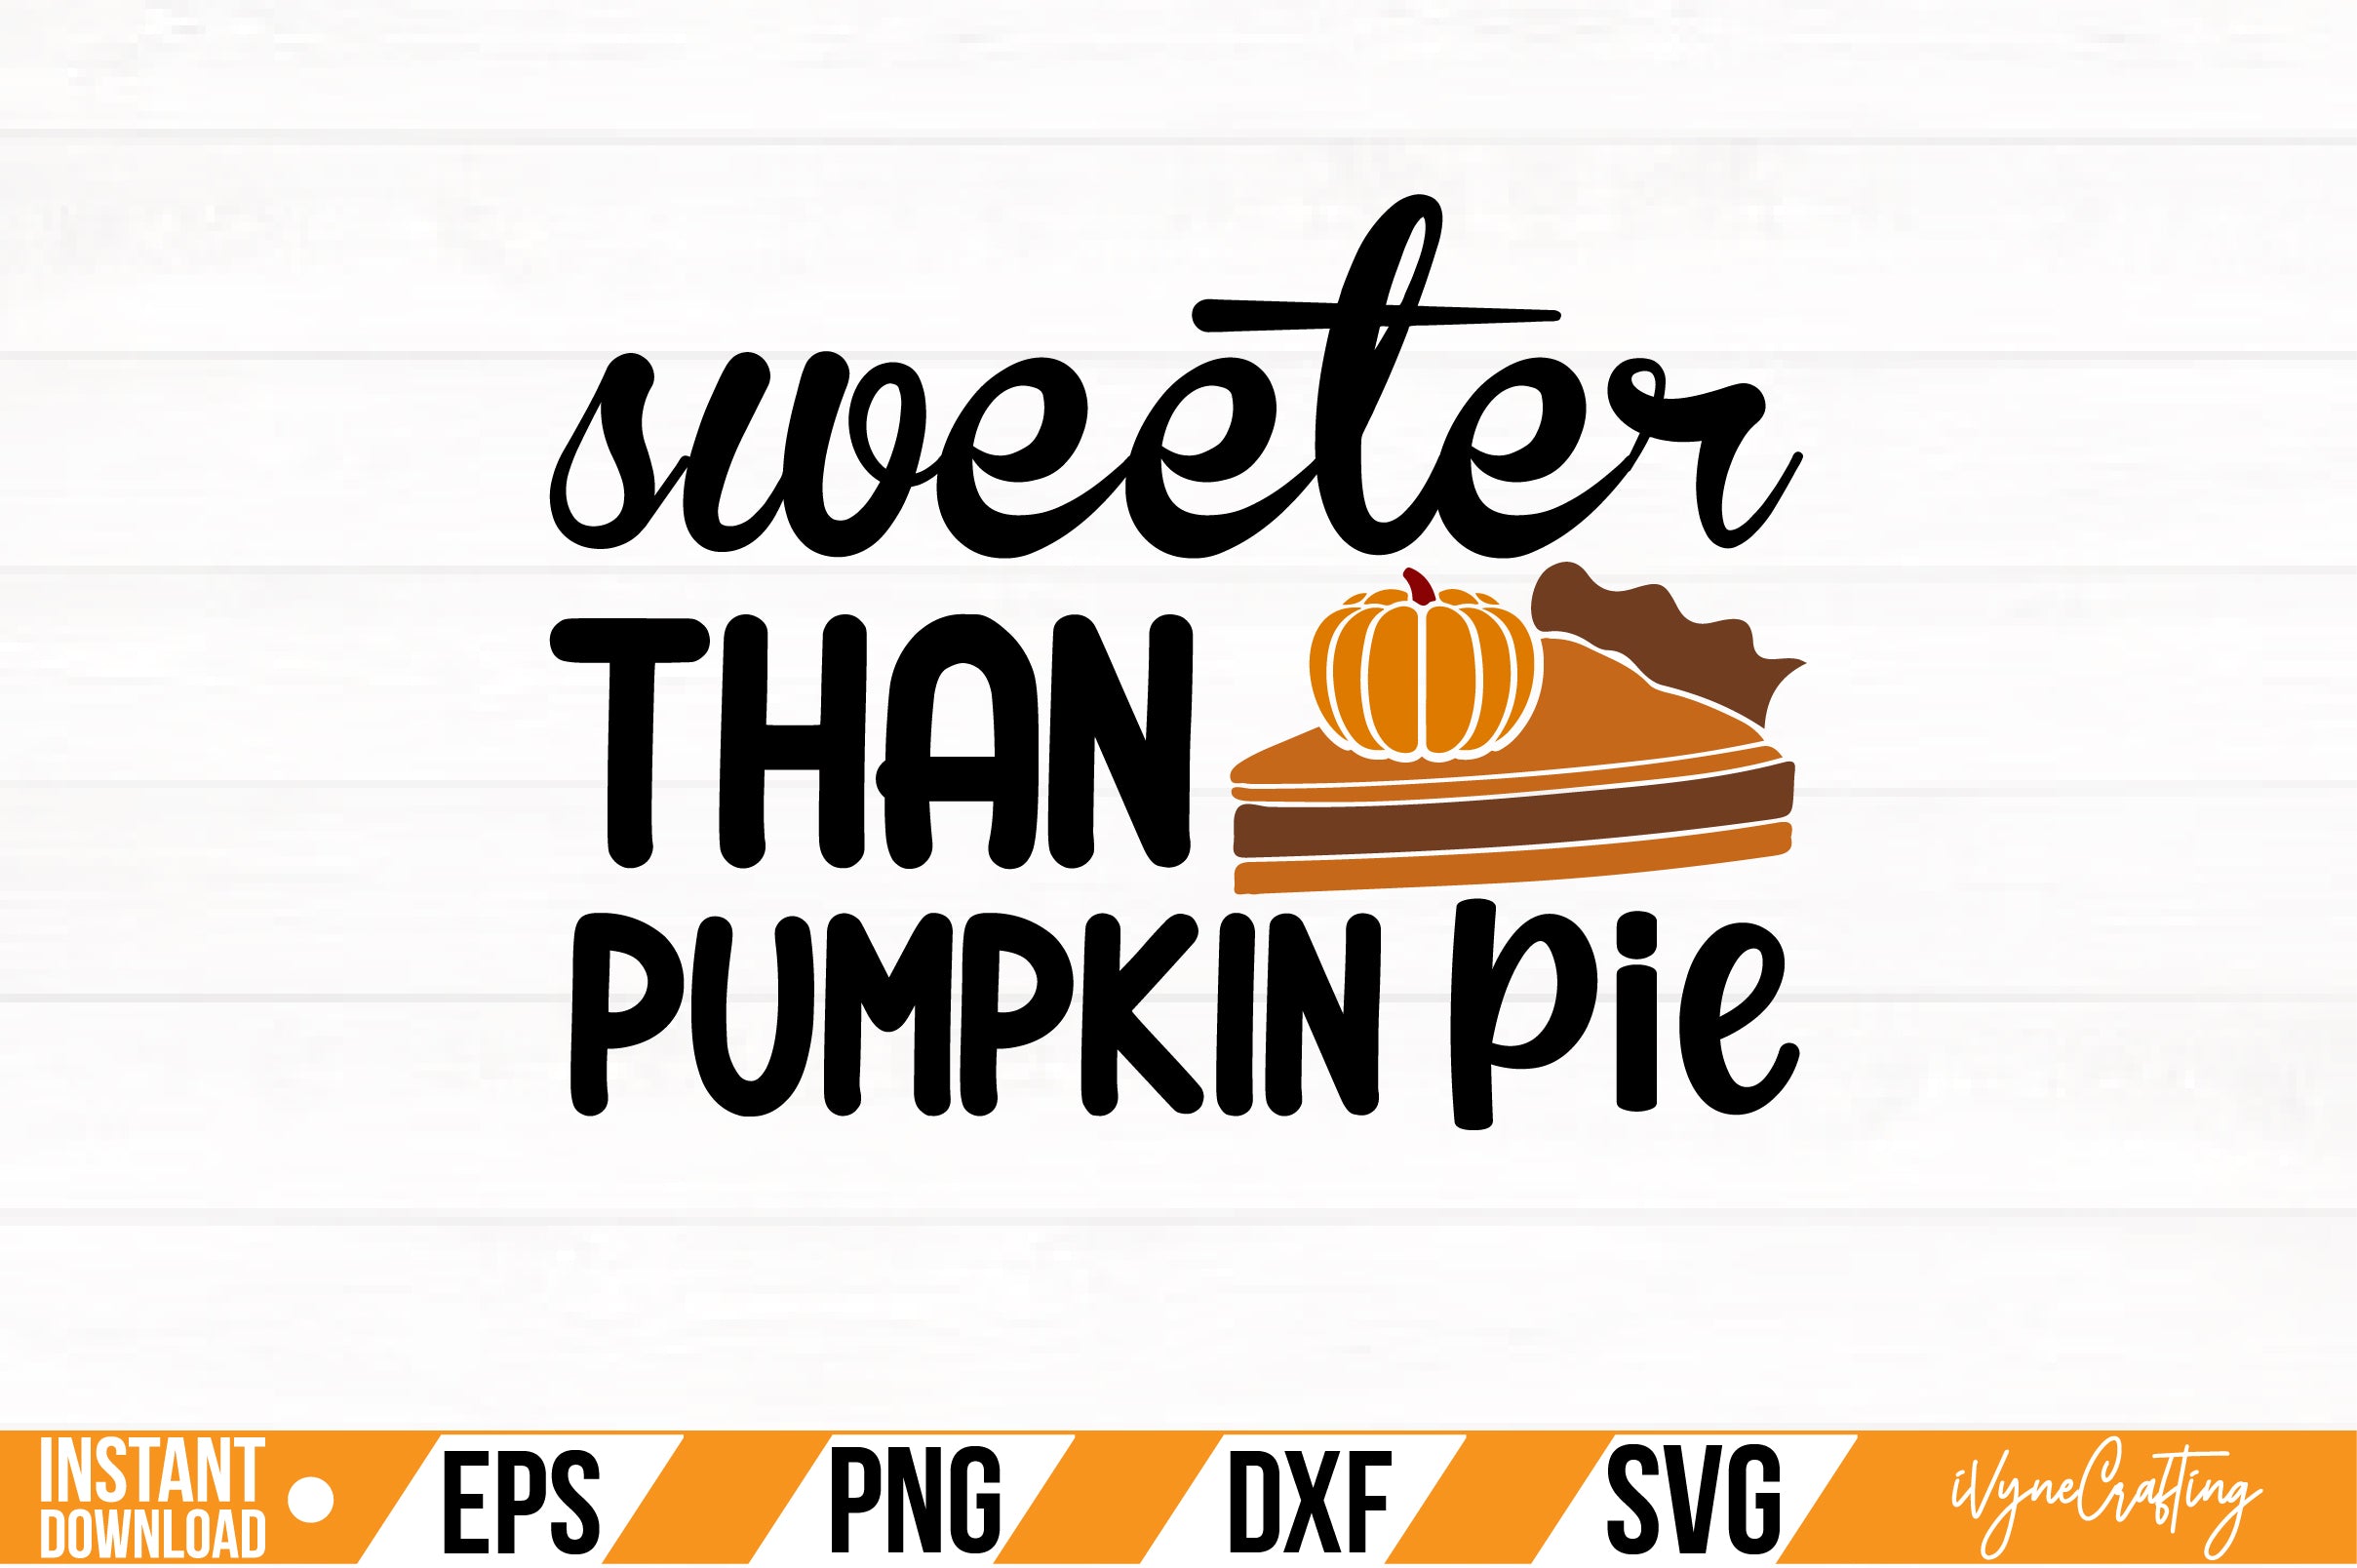 sweeter than pumpkin pie SVG Cut File